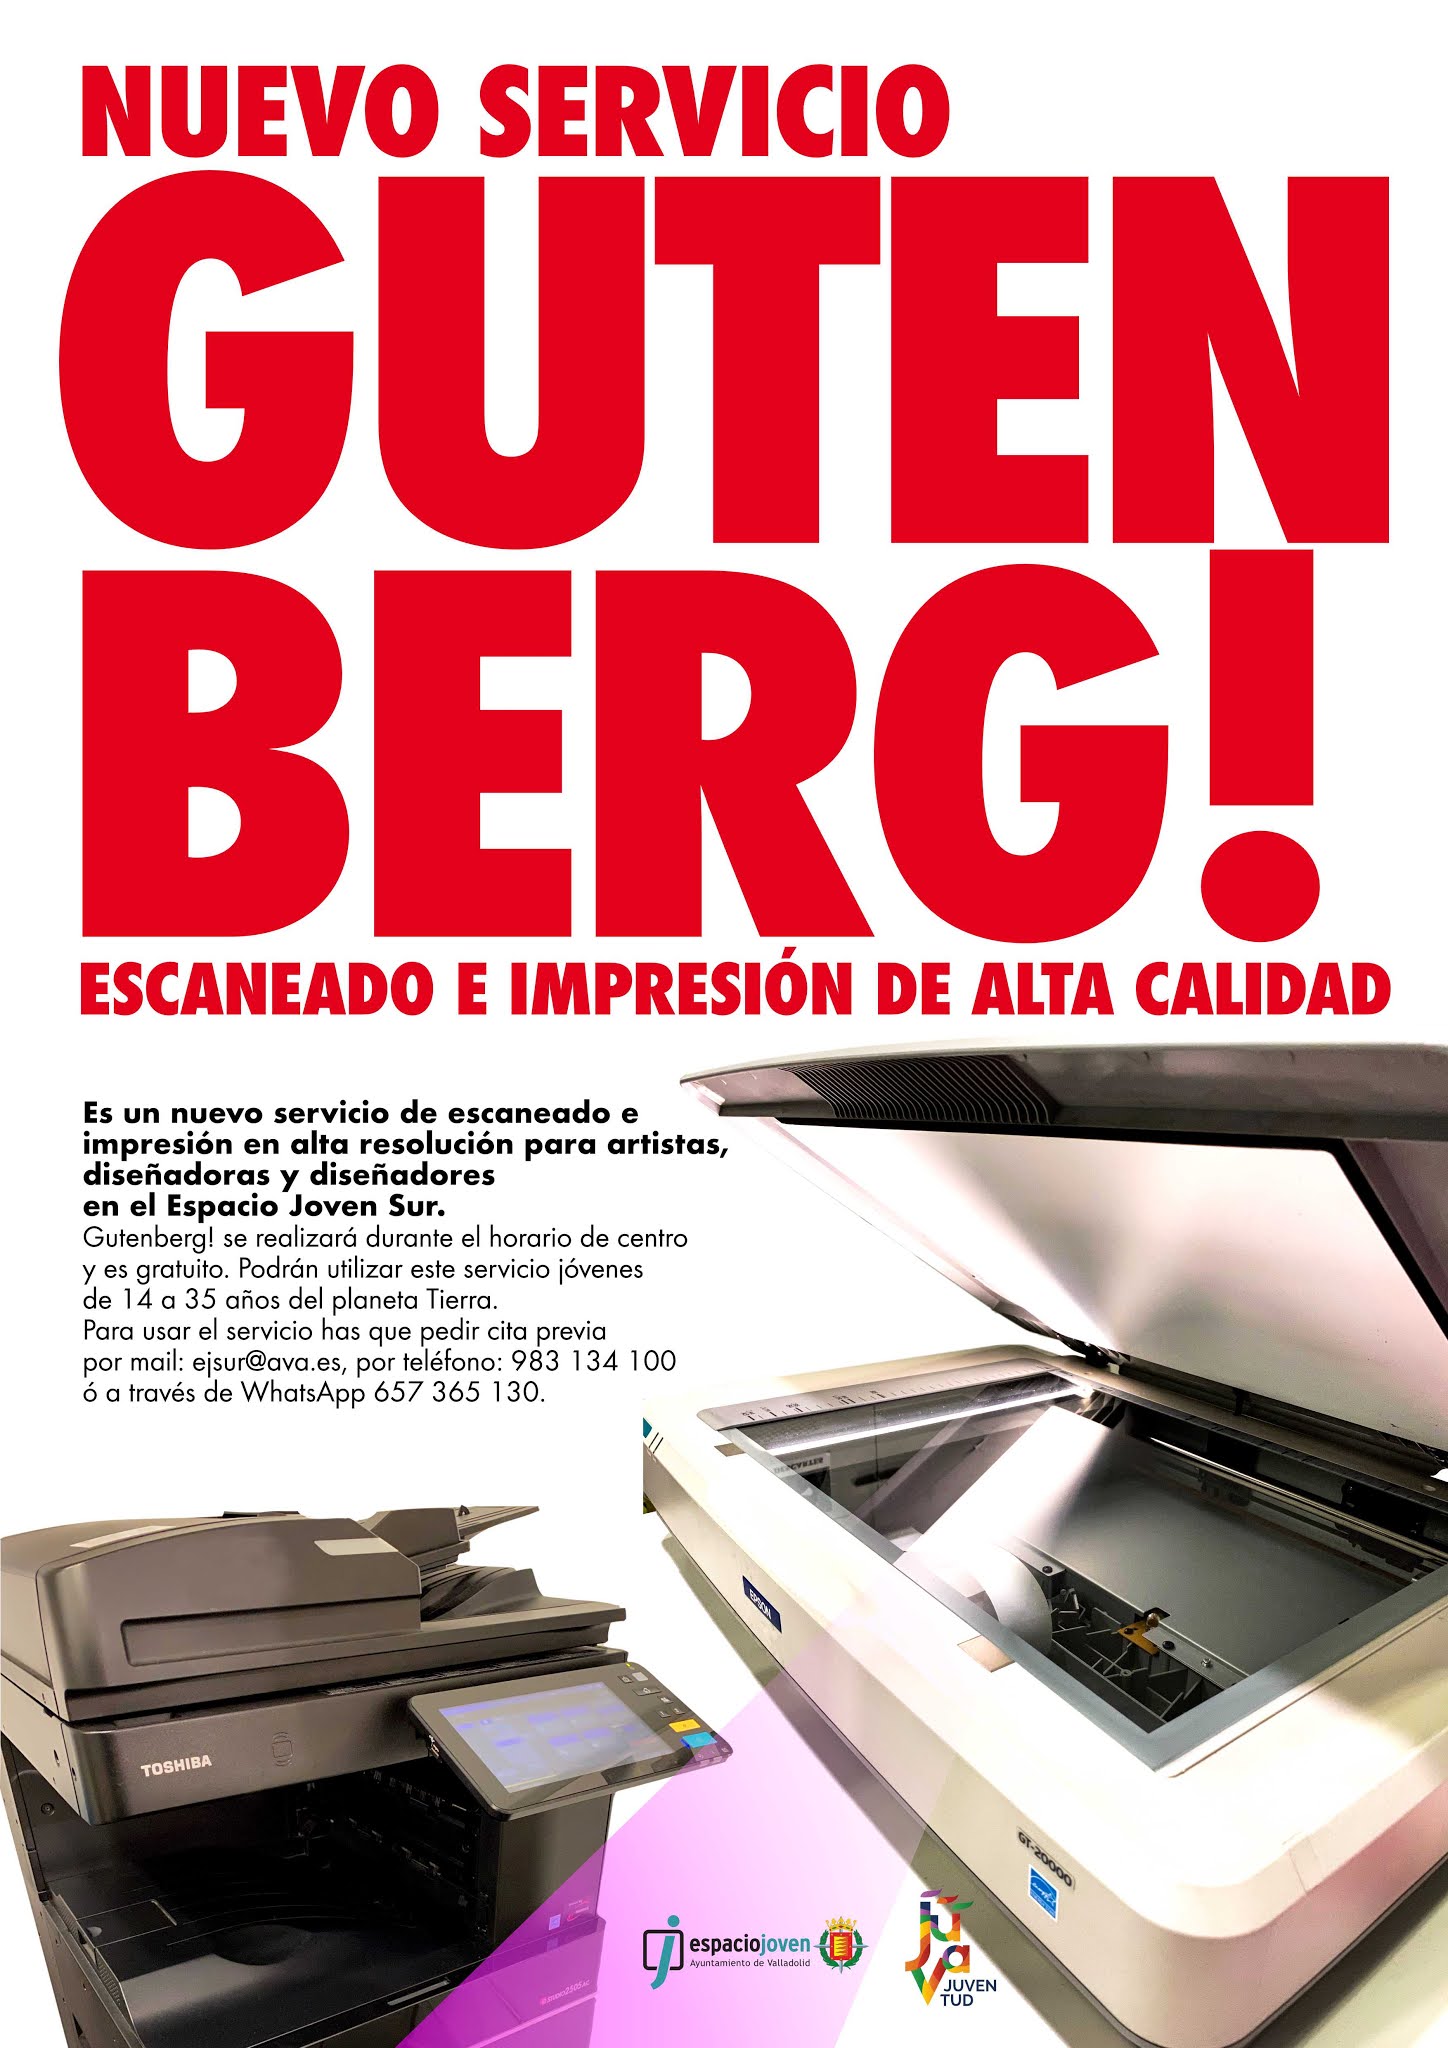 Gutenberg! nuevo servicio de escaneado e impresión en alta resolución en el Espacio Joven Sur